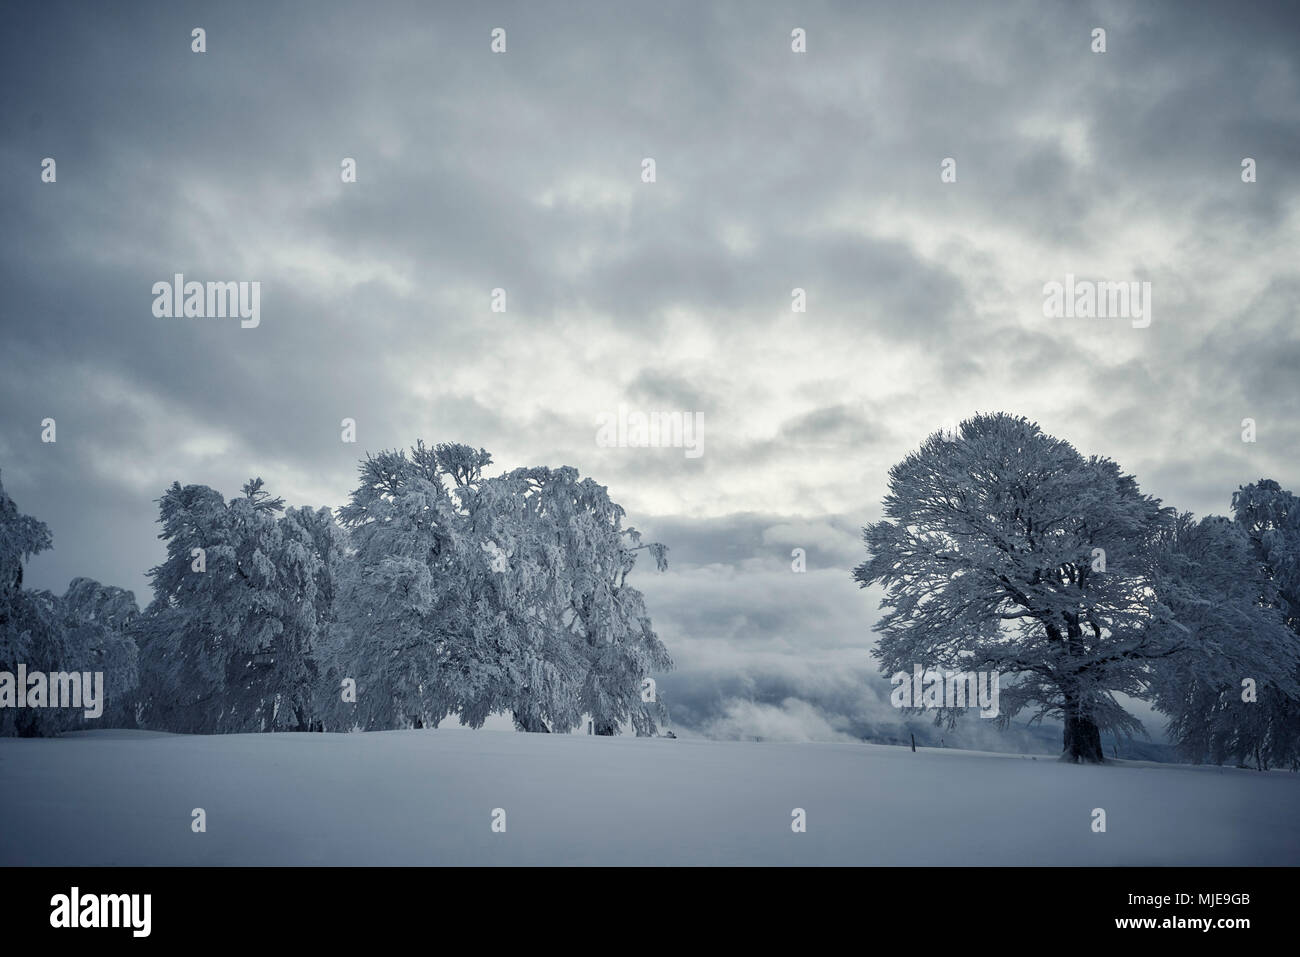 Snowy windswept Buche auf einem Hügel im Winter, Himmel mit dunklen Wolken Stockfoto